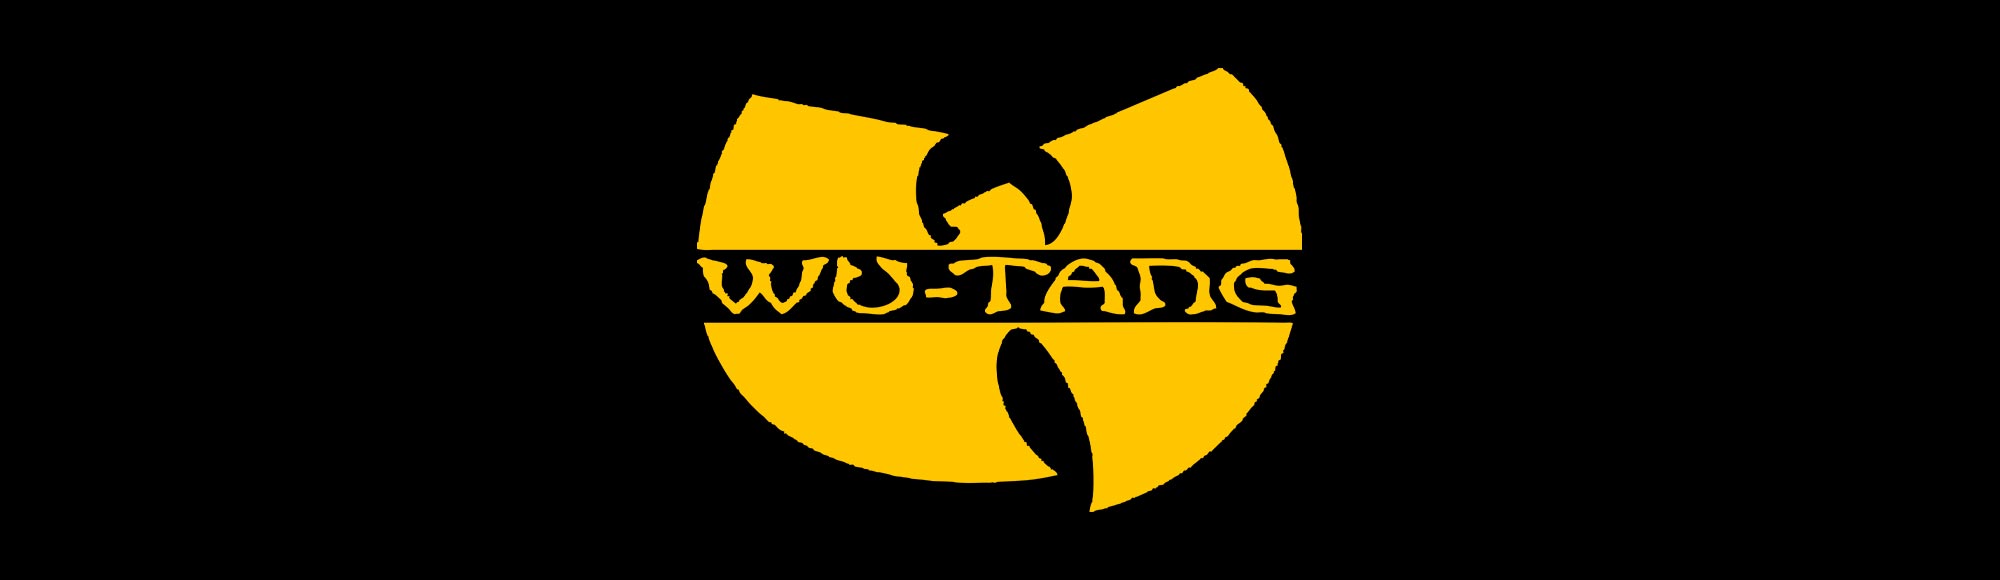 Wu-Tang Clan - The Saga Continues show